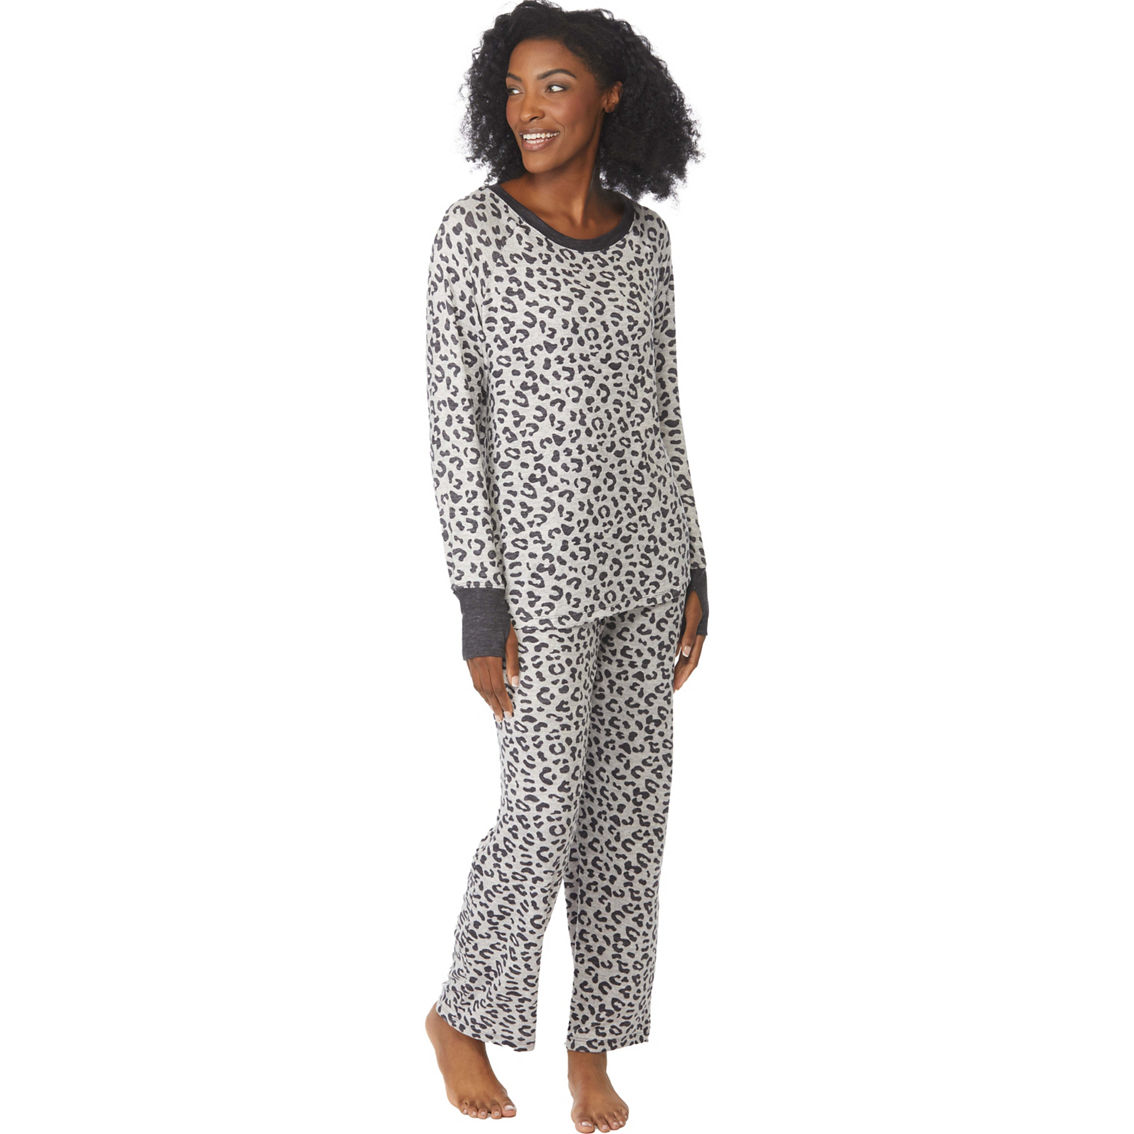 Rene Rofe Simple Lounging Pajamas 2 pc. Set - Image 4 of 4